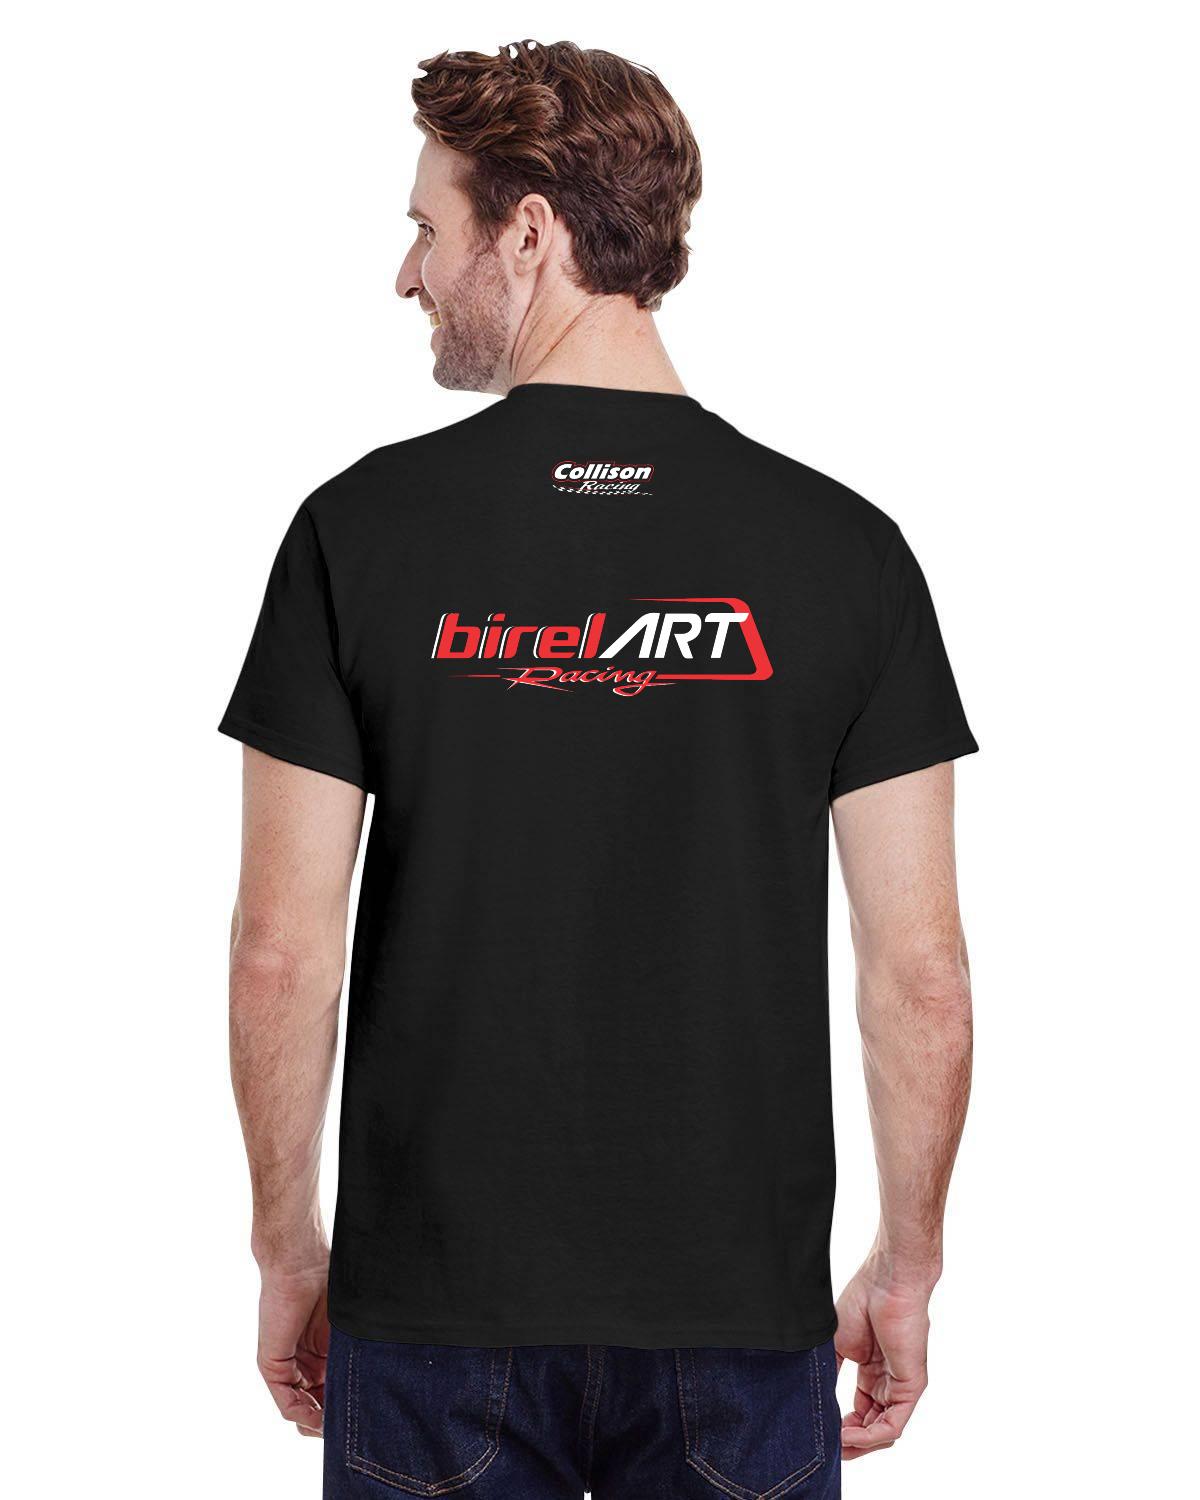 Birel Art Racing Adult T-Shirt (Dark)